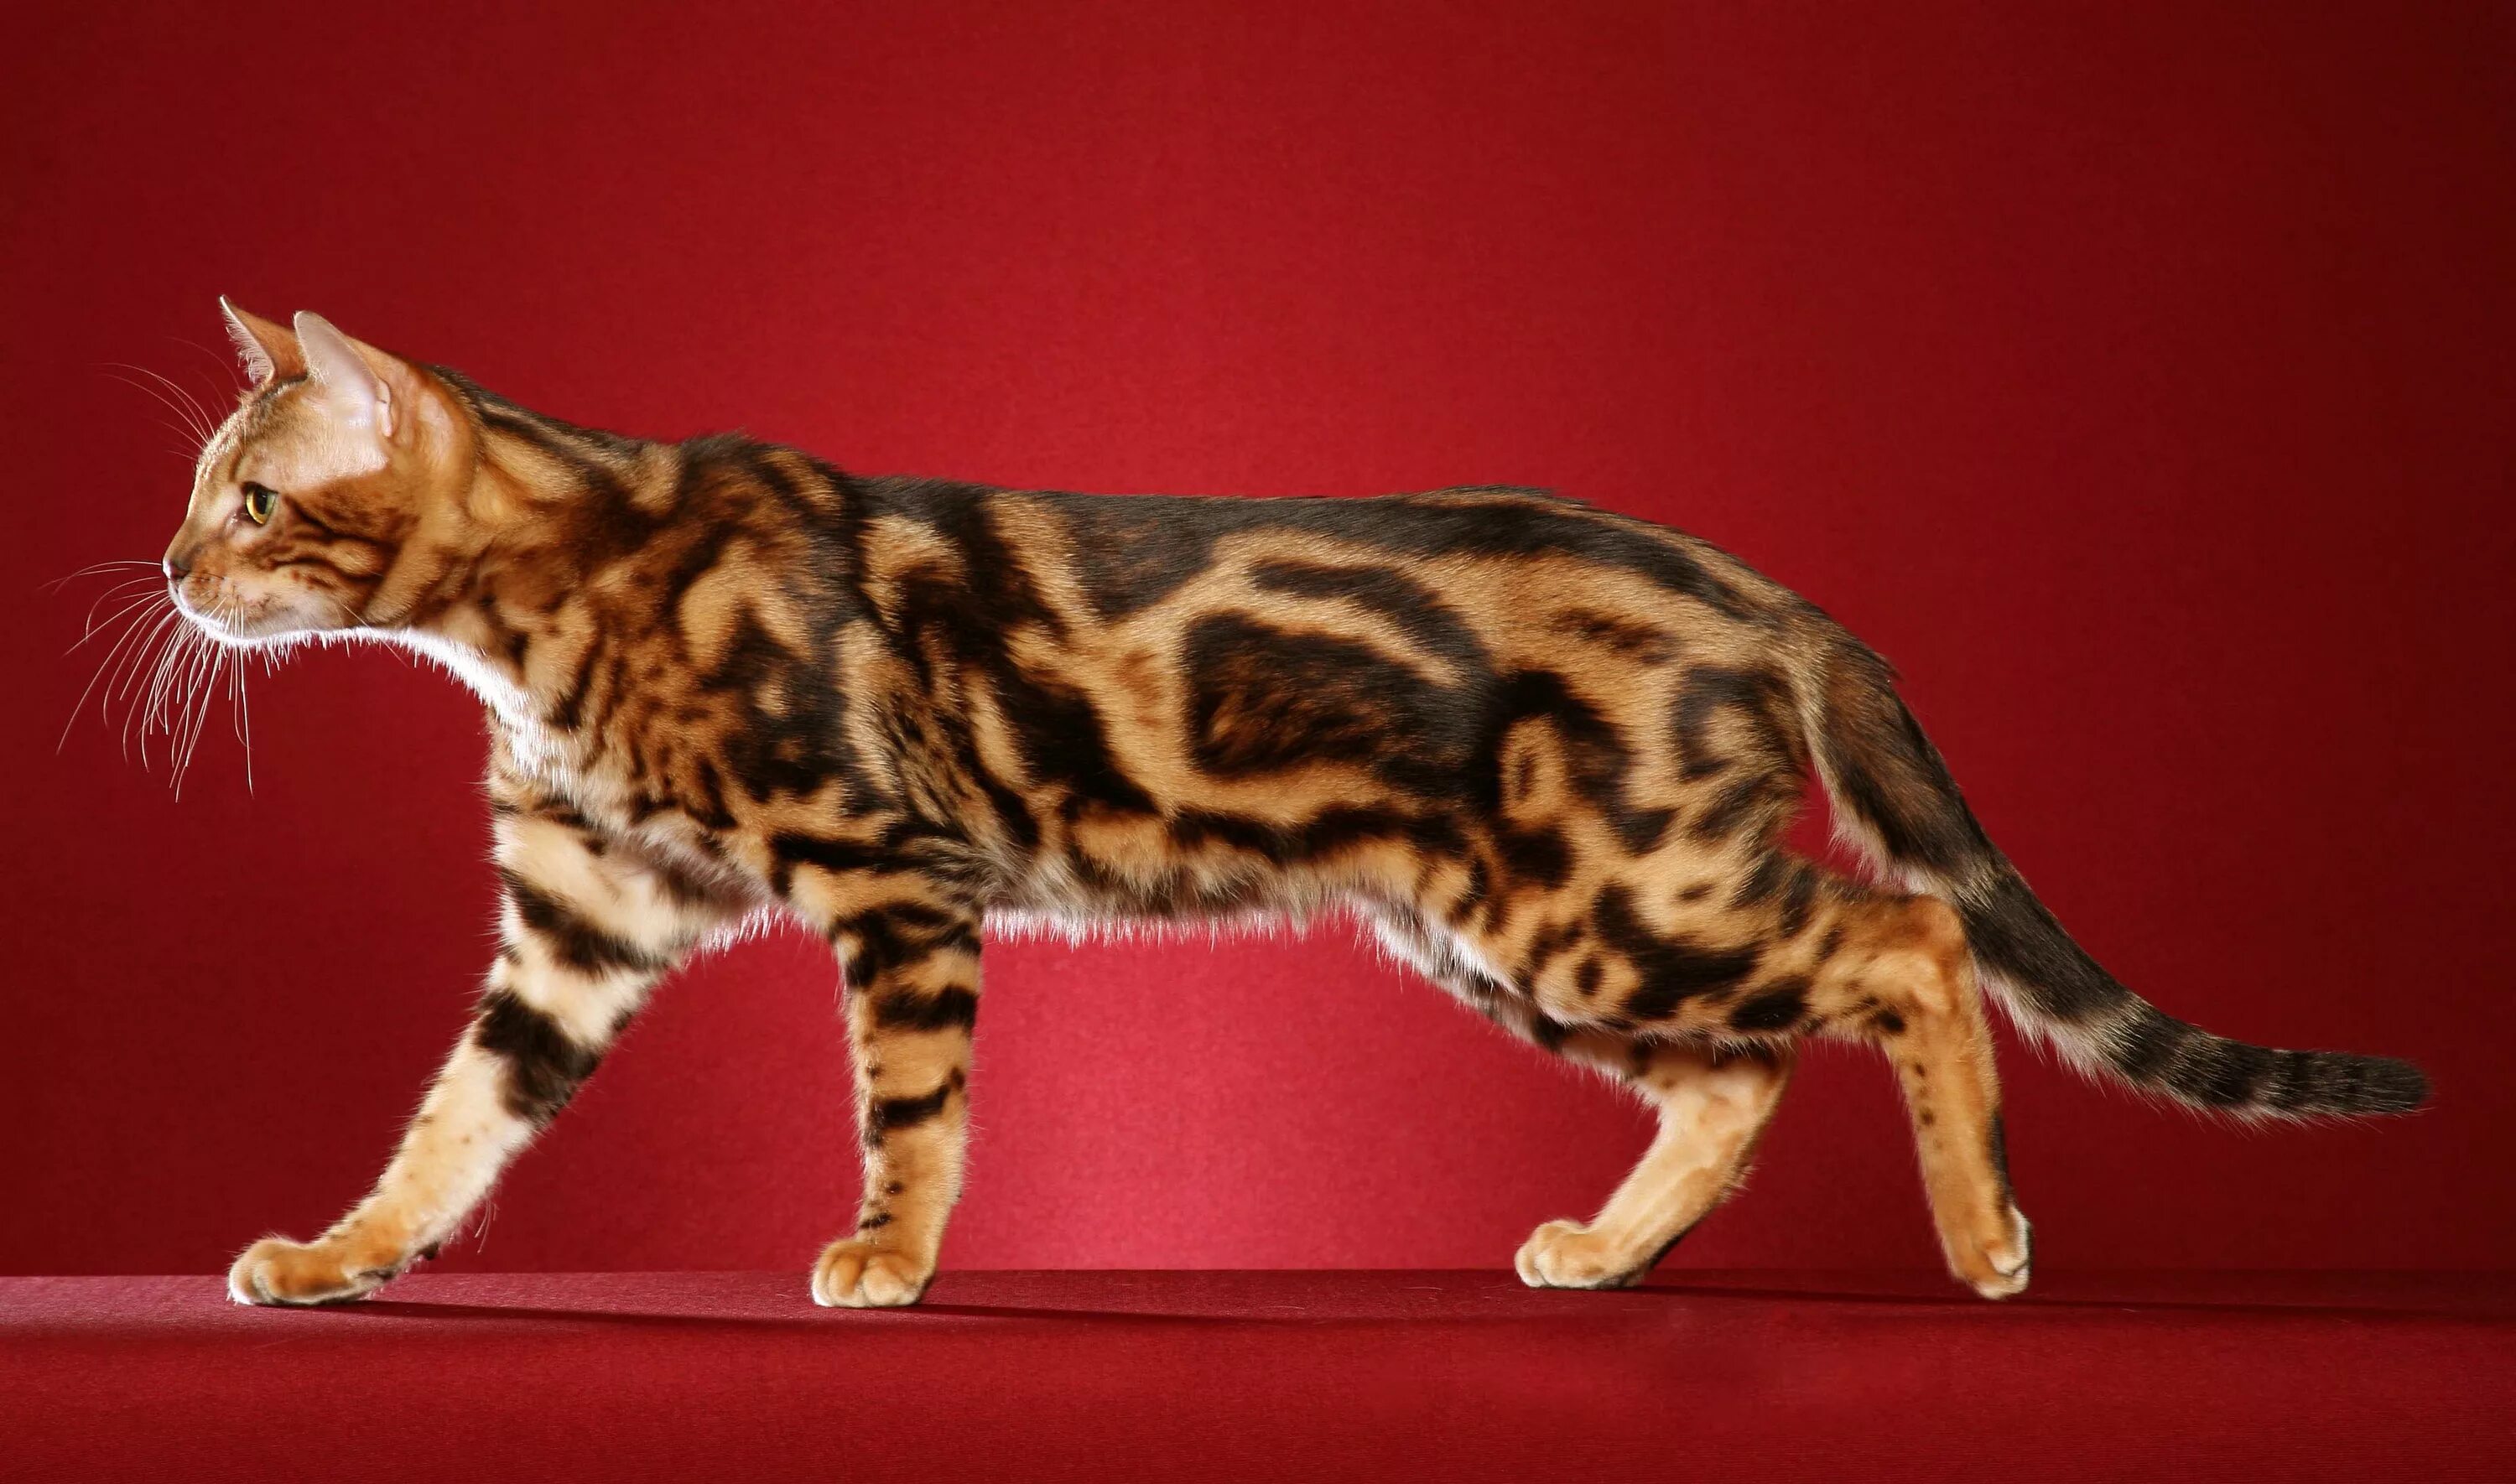 Рассмотрите фотографию пятнистой кошки породы бенгальская. Браун Марбл бенгалы. Бенгал Браун табби Марбл. Бенгальская короткошерстная бенгал. Бенгальский кот Браун Марбл.